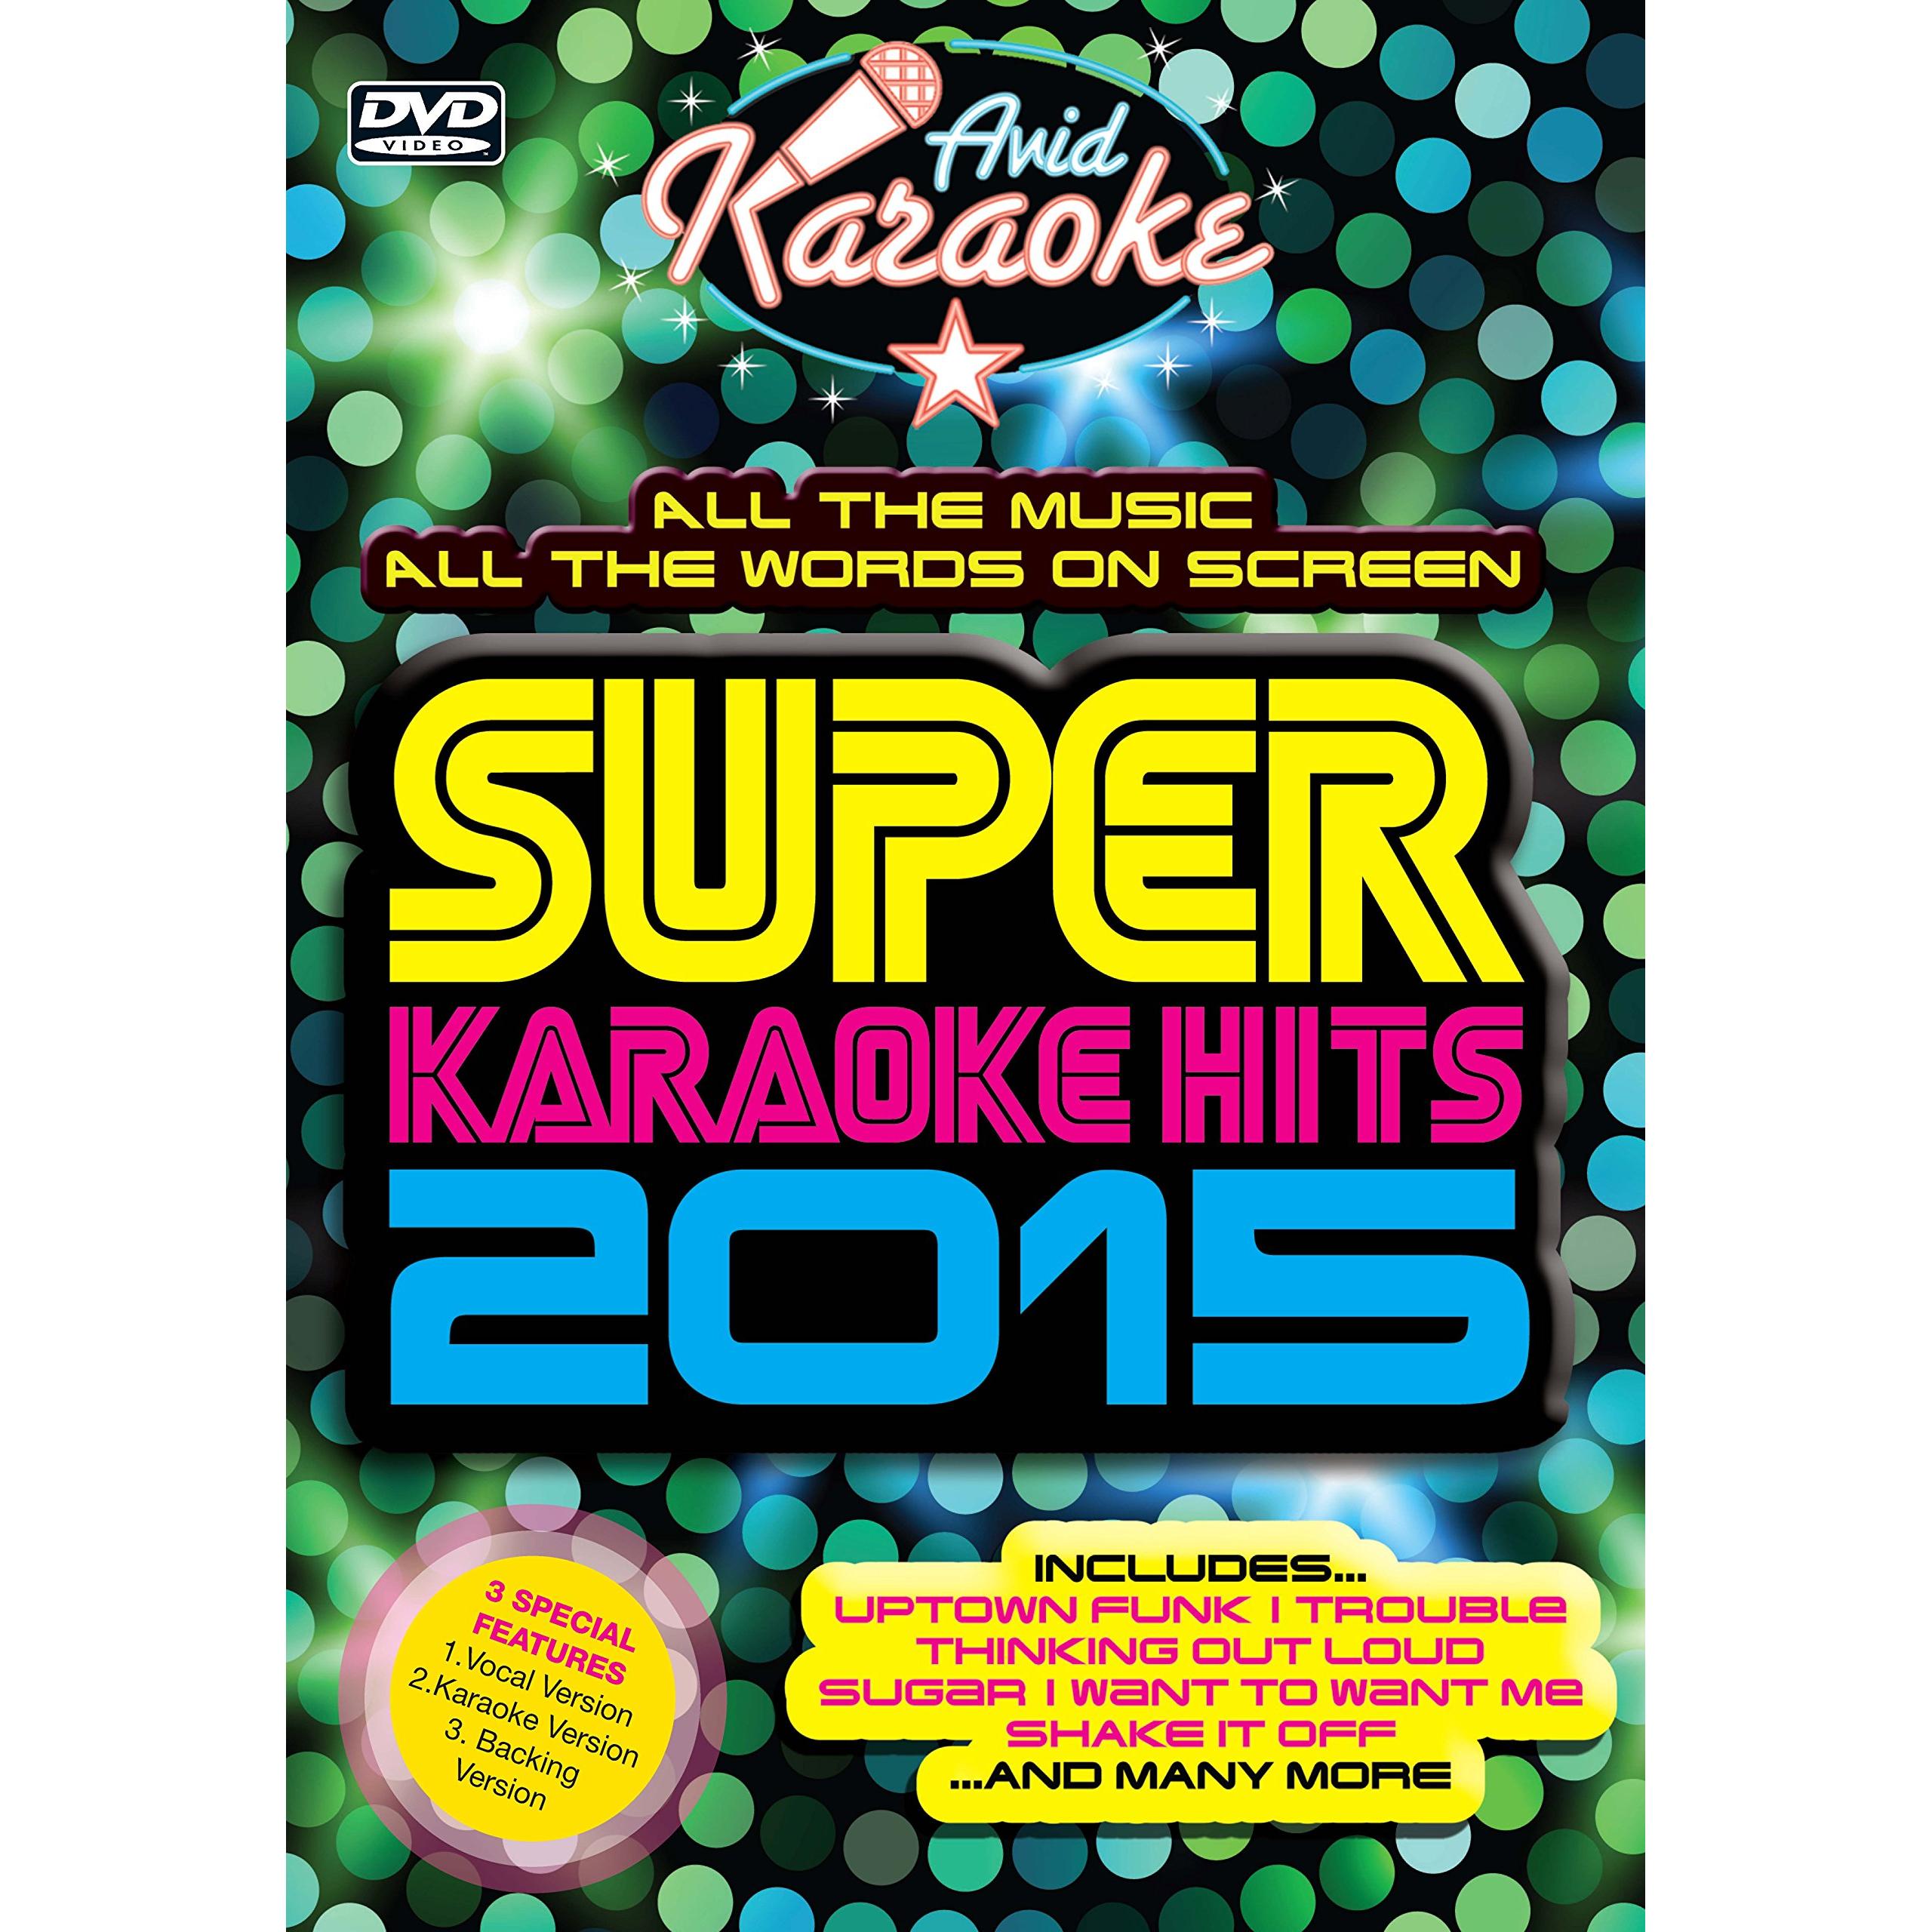 SUPER KARAOKE HITS 2015